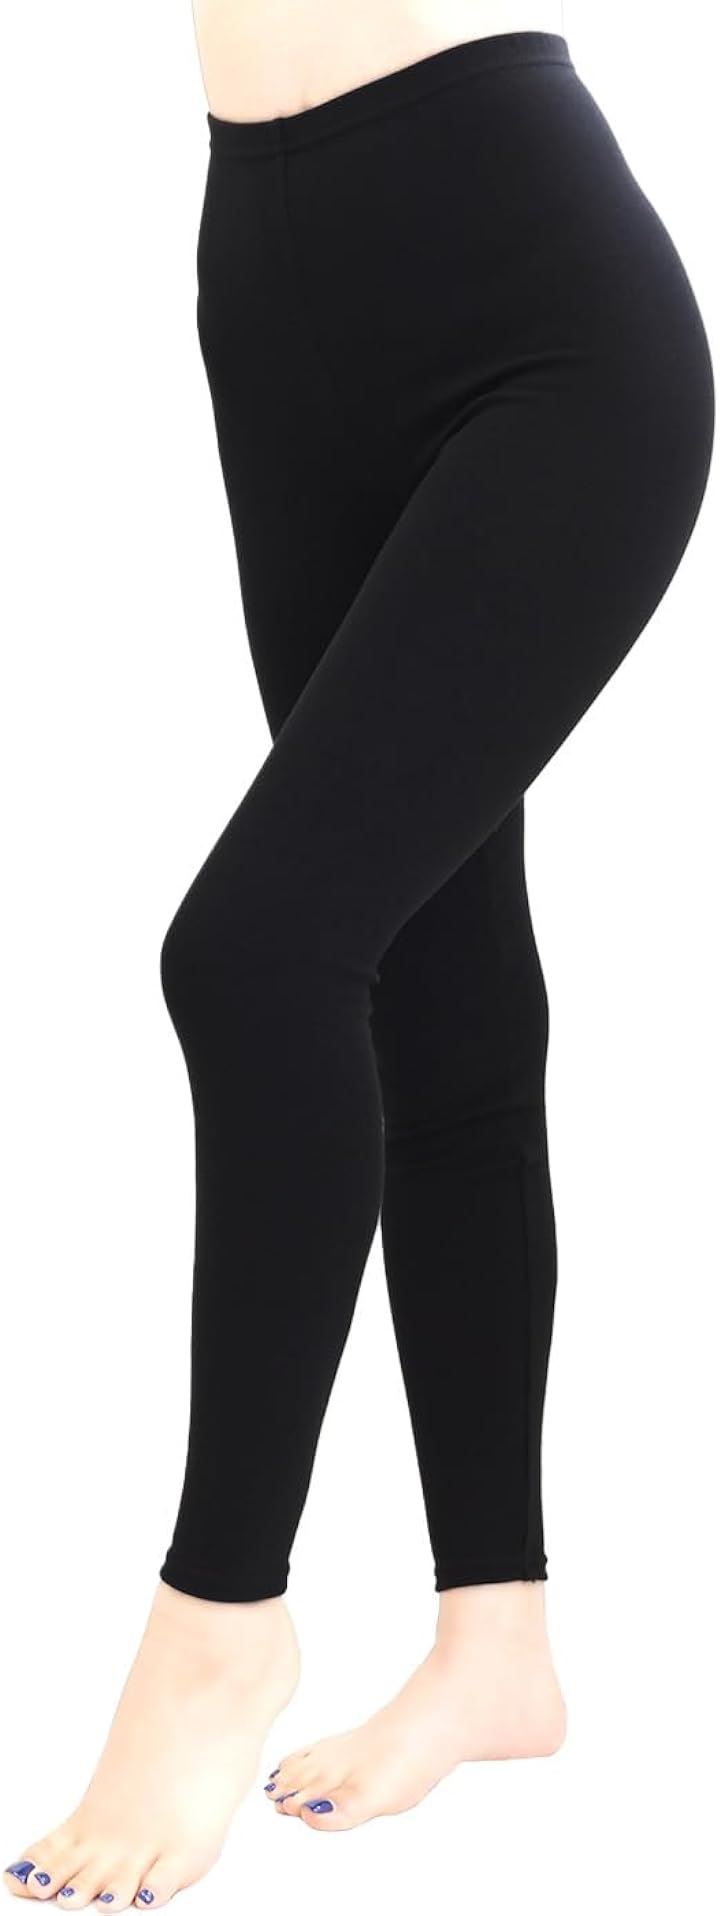 レディース 女性 パンツ レギンス スパッツ 綿混 日本製( ブラック10分丈, XL-2XL)